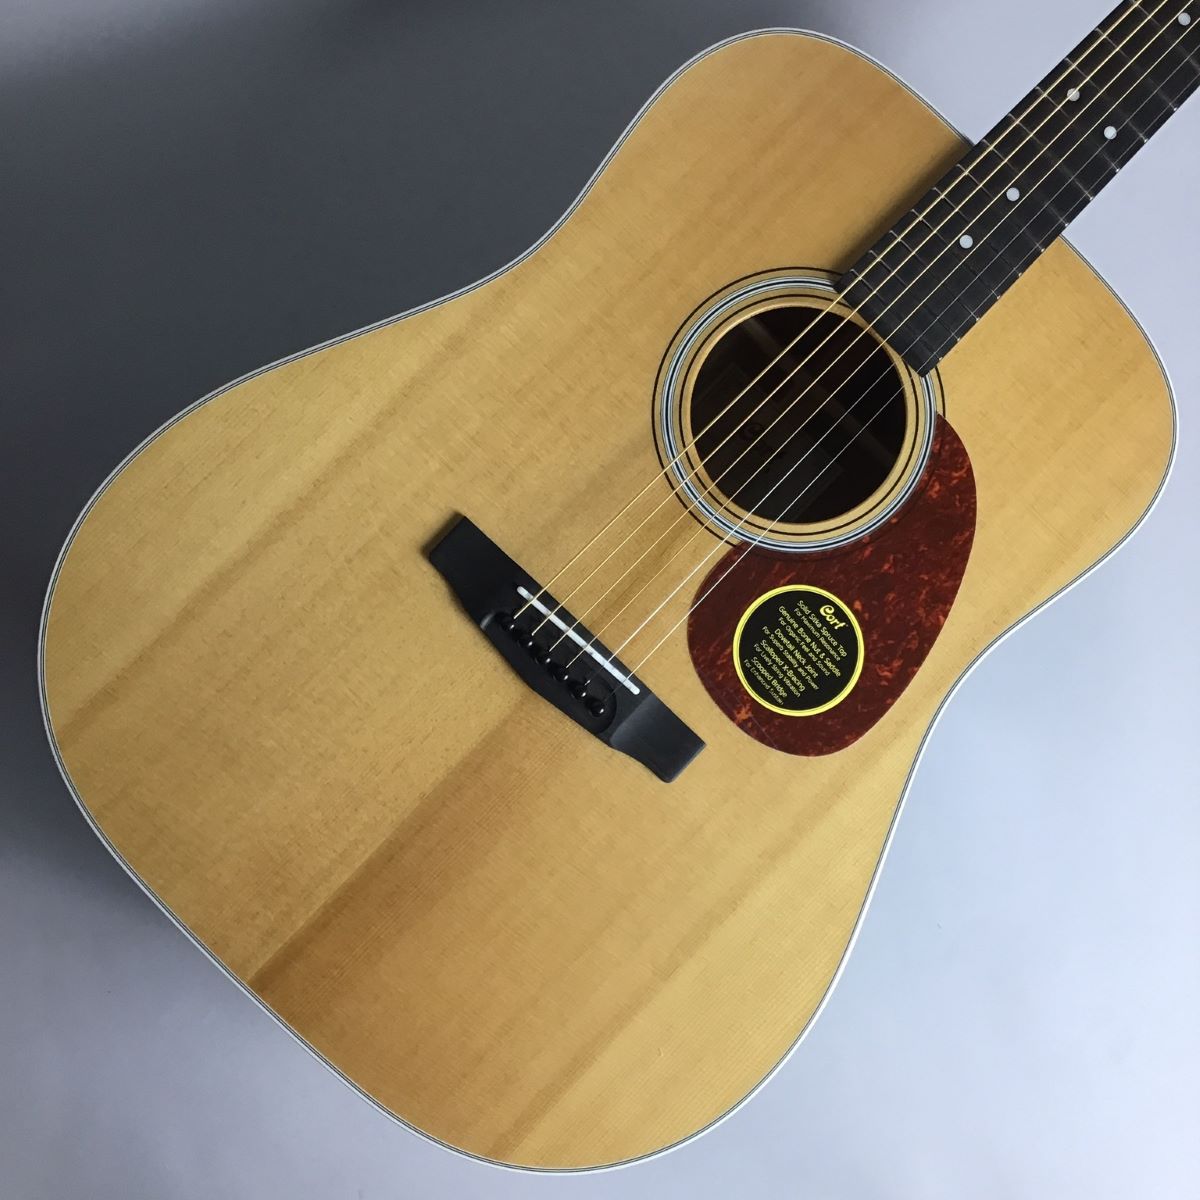 フェルナンデス W-200 アコースティックギター【新品弦交換・メンテナンス済み